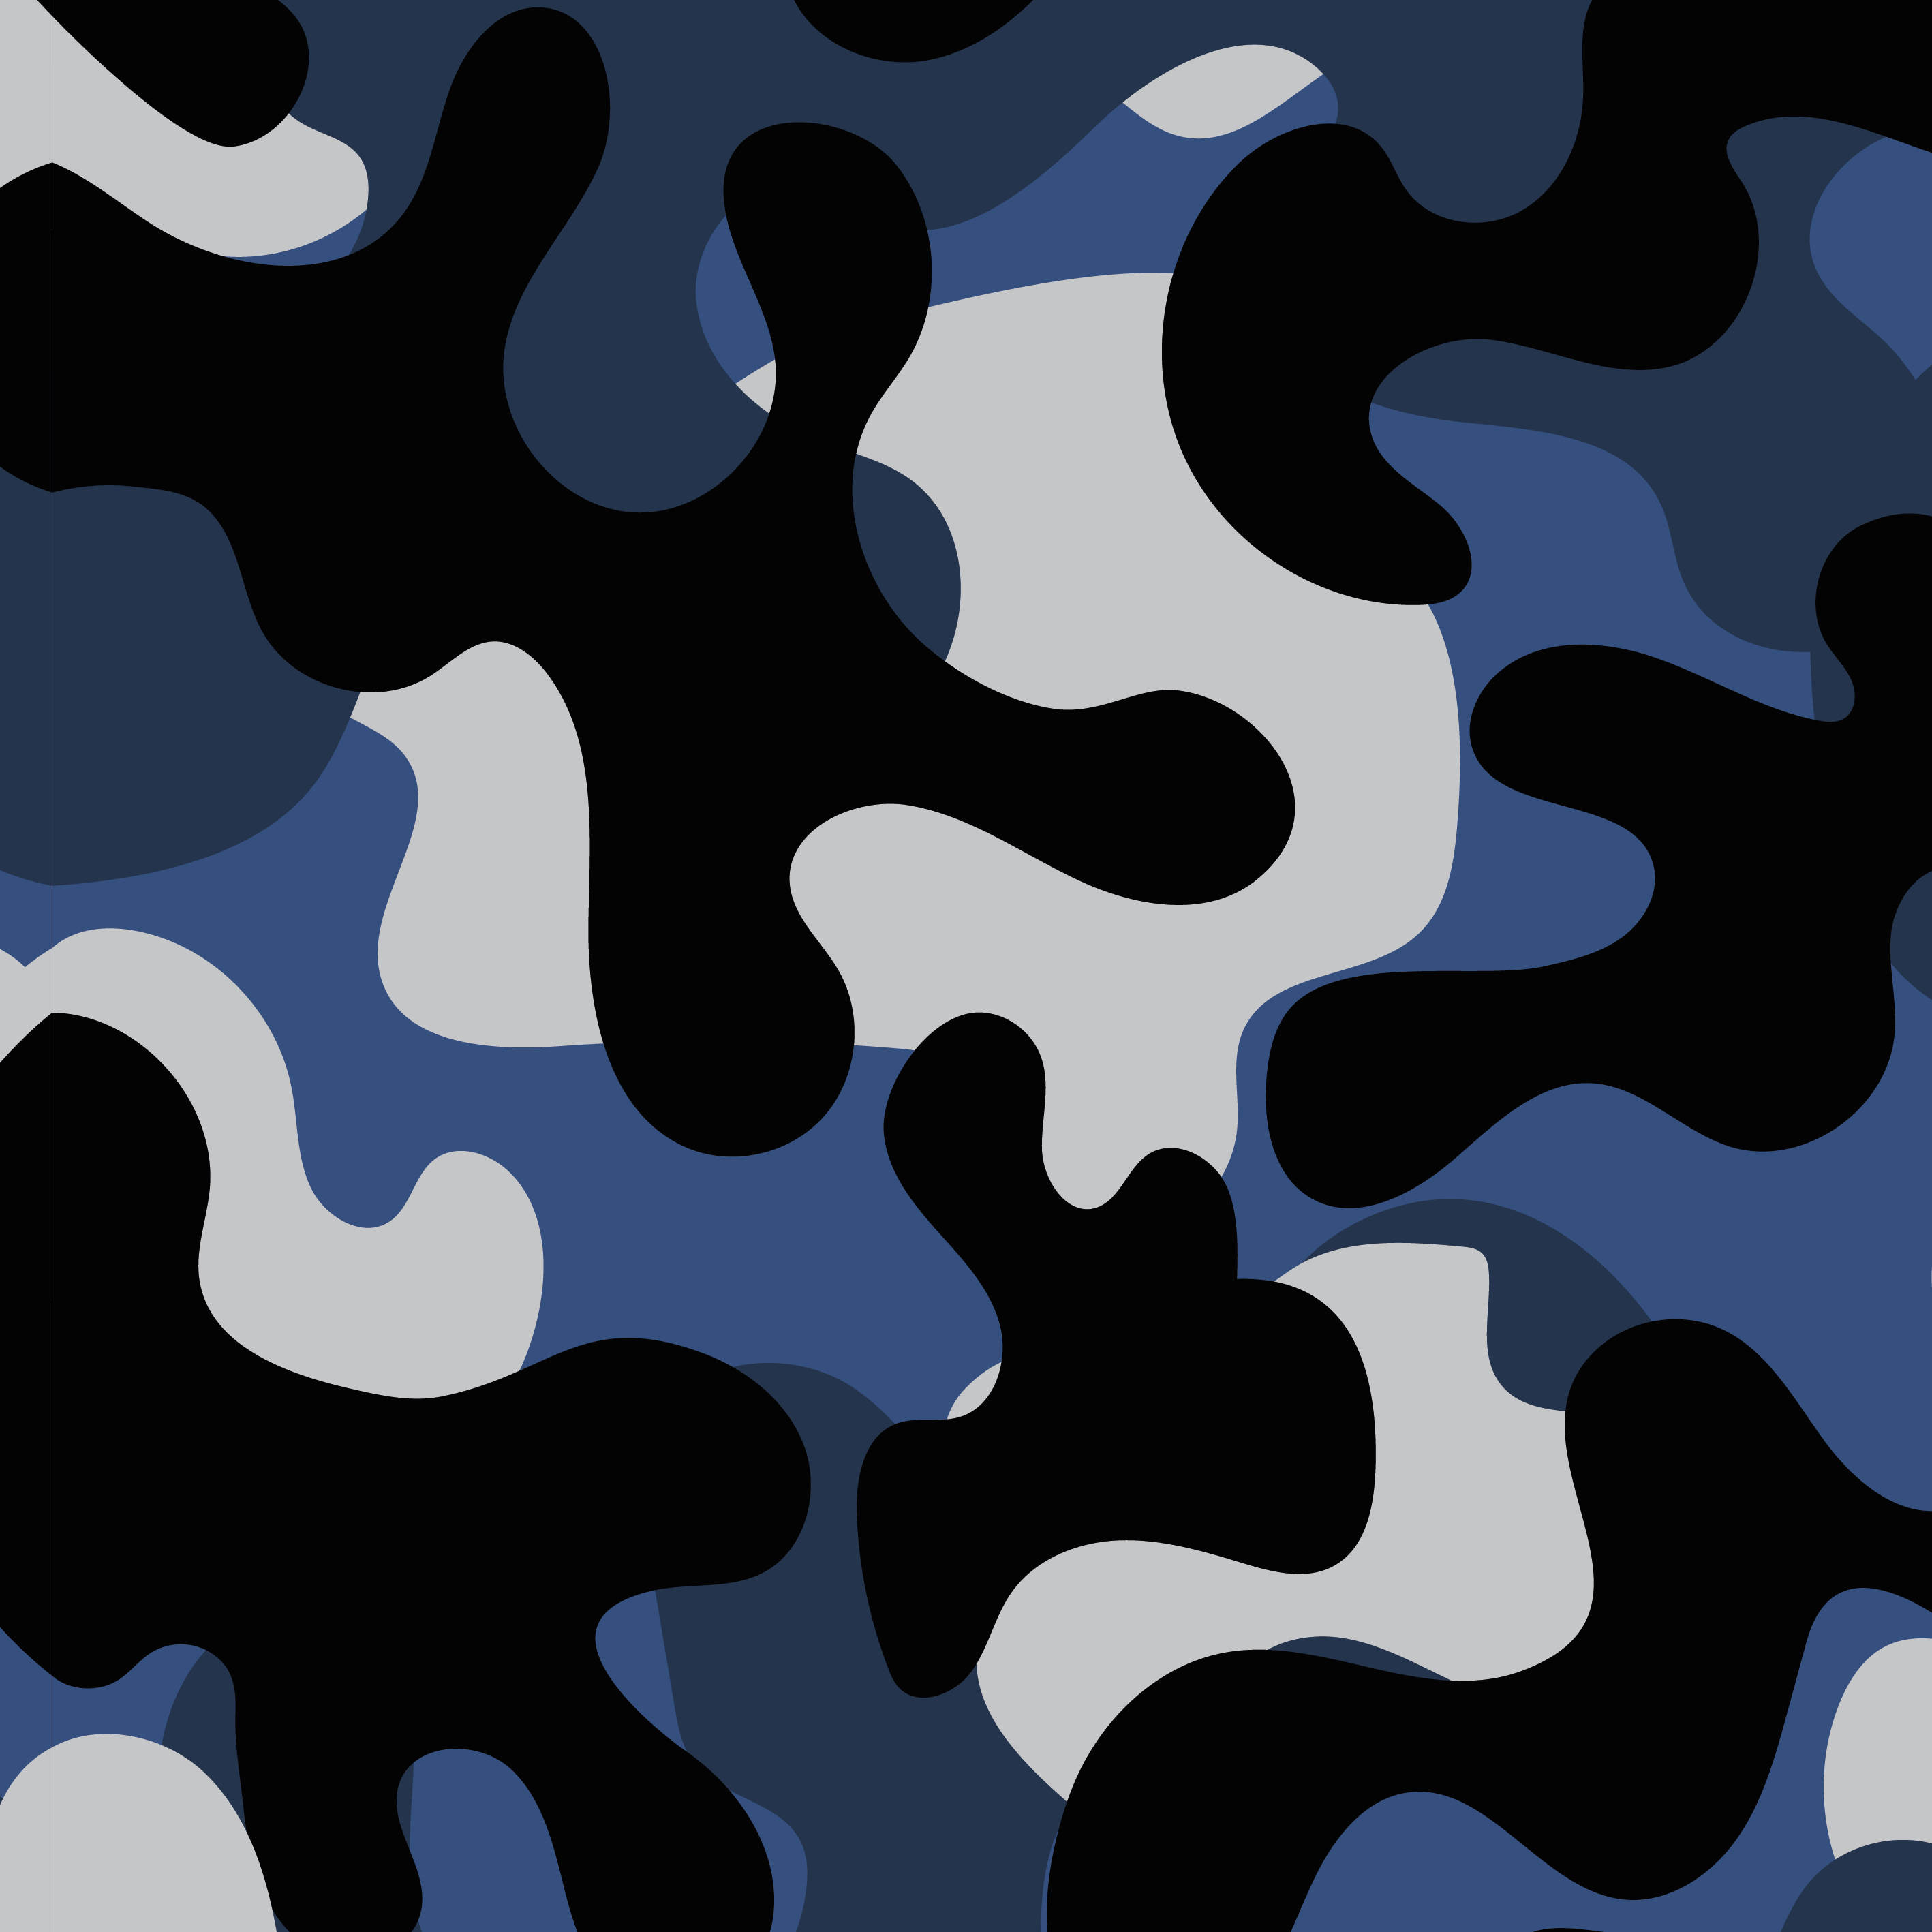 Autofolie Black Camouflage online kaufen